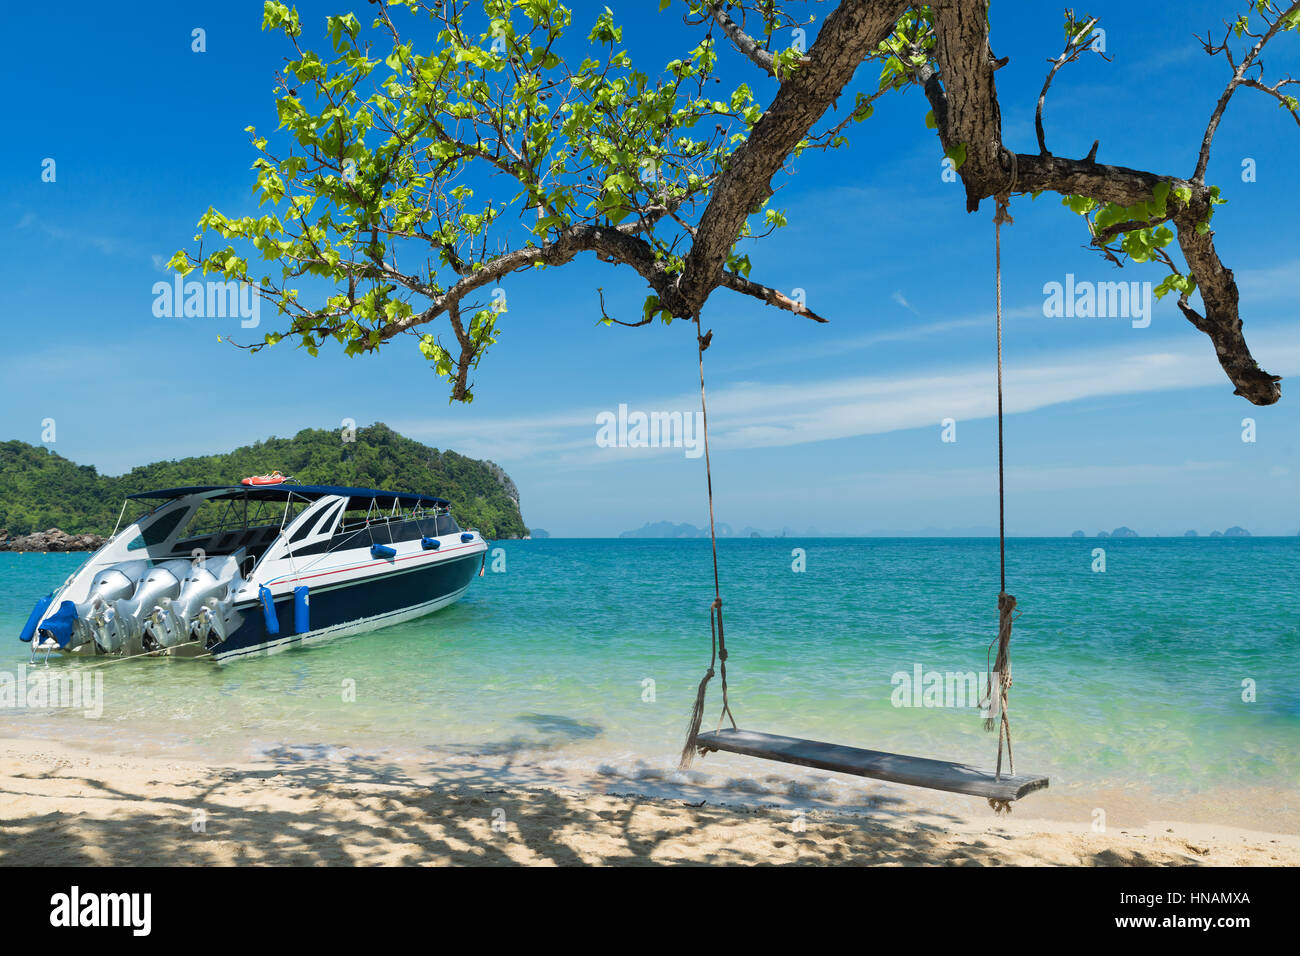 Holzschaukel Stuhl hängen am Baum in der Nähe von Strand von Island in Phuket, Thailand. Sommer Urlaubsreisen und Urlaub-Konzept. Stockfoto